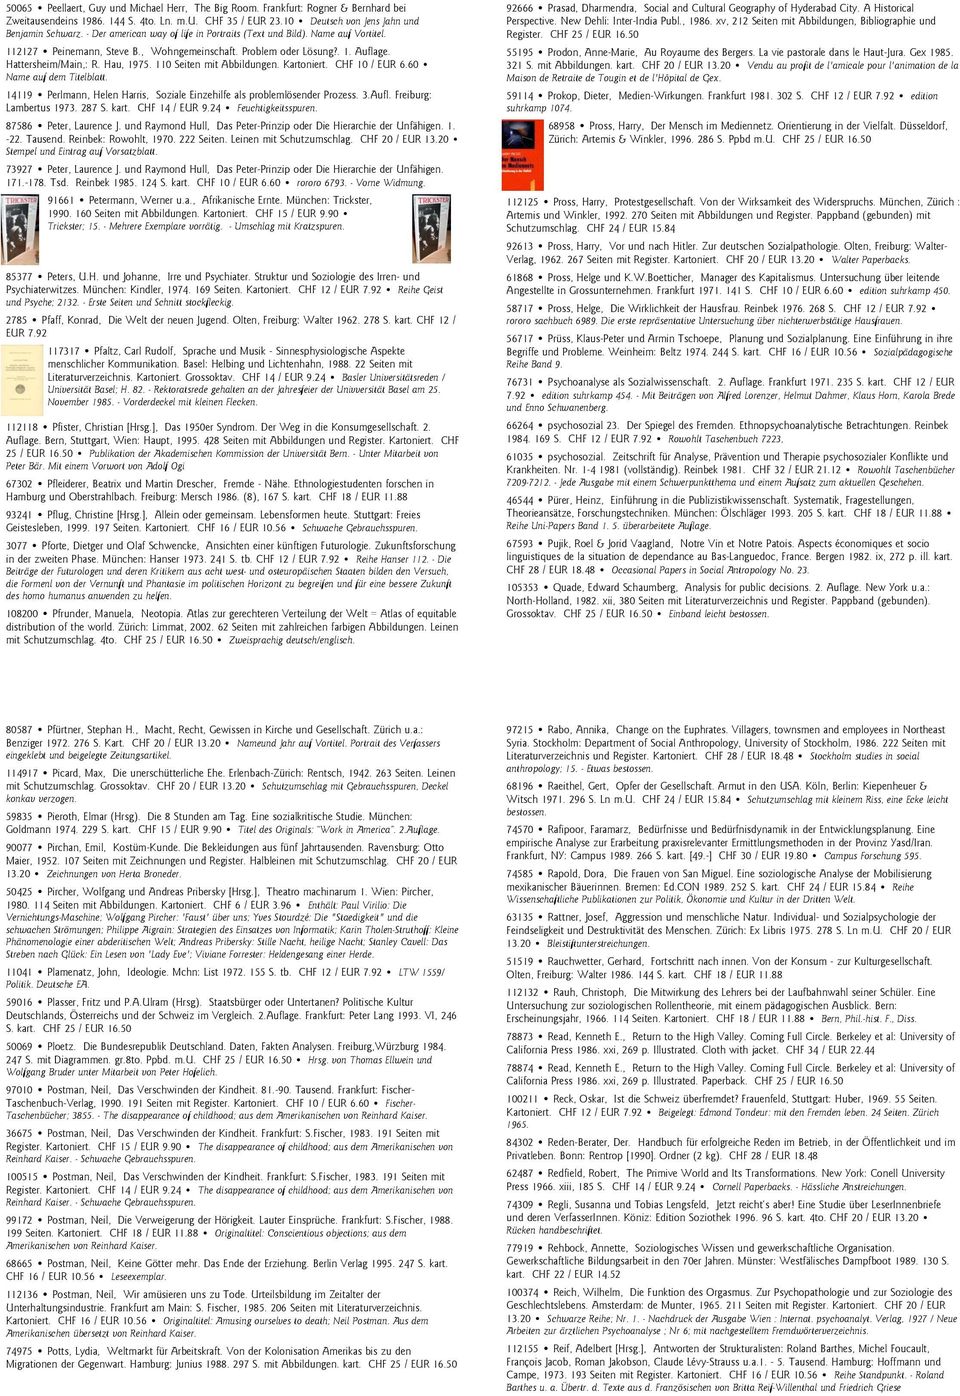 110 Seiten mit Abbildungen. Kartoniert. CHF 10 / EUR 6.60 Name auf dem Titelblatt. 14119 Perlmann, Helen Harris, Soziale Einzehilfe als problemlösender Prozess. 3.Aufl. Freiburg: Lambertus 1973.